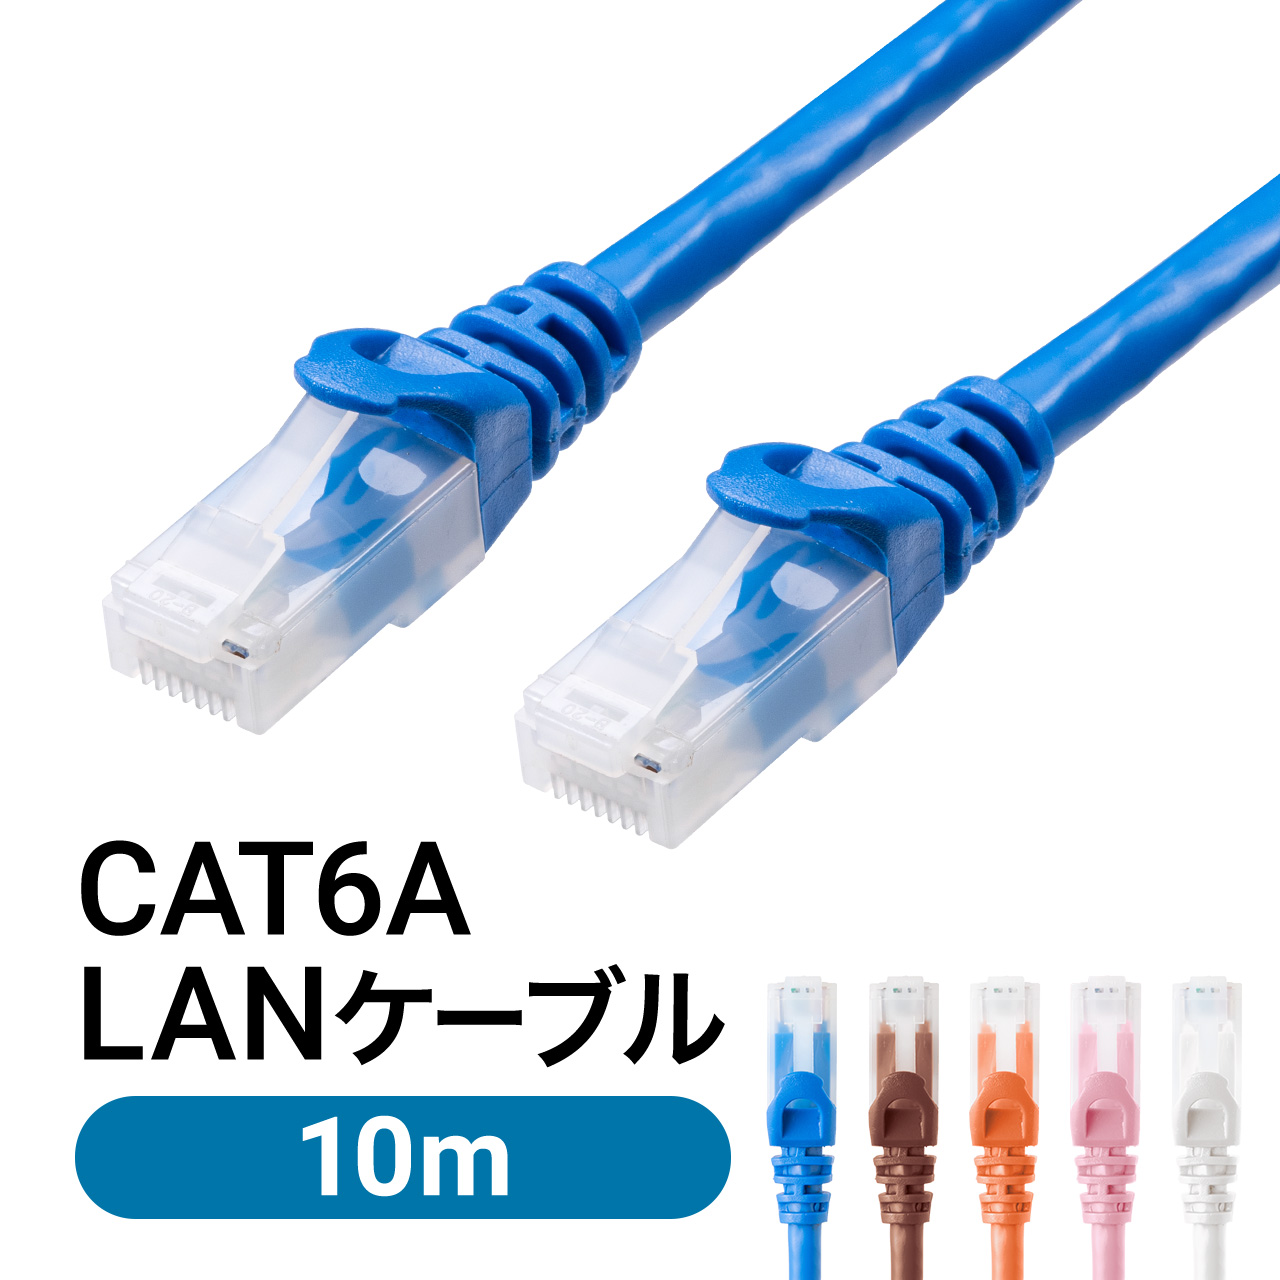 LANケーブル CAT6A 1m 100cm カテゴリ6A カテ6A ランケーブル 通信 